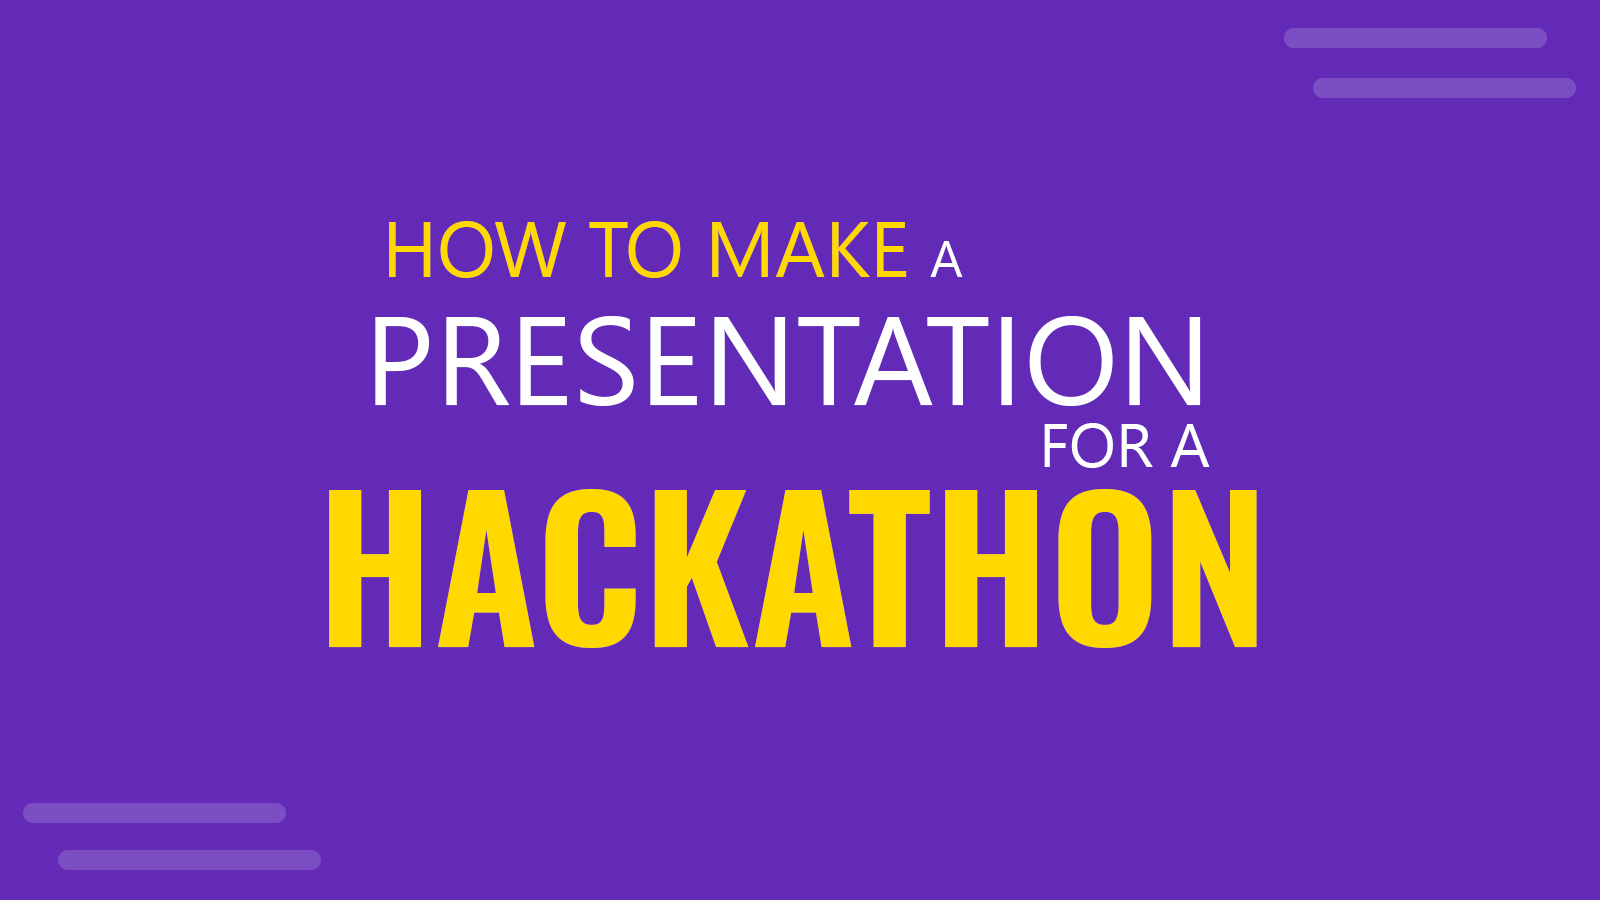 hackathon presentation format